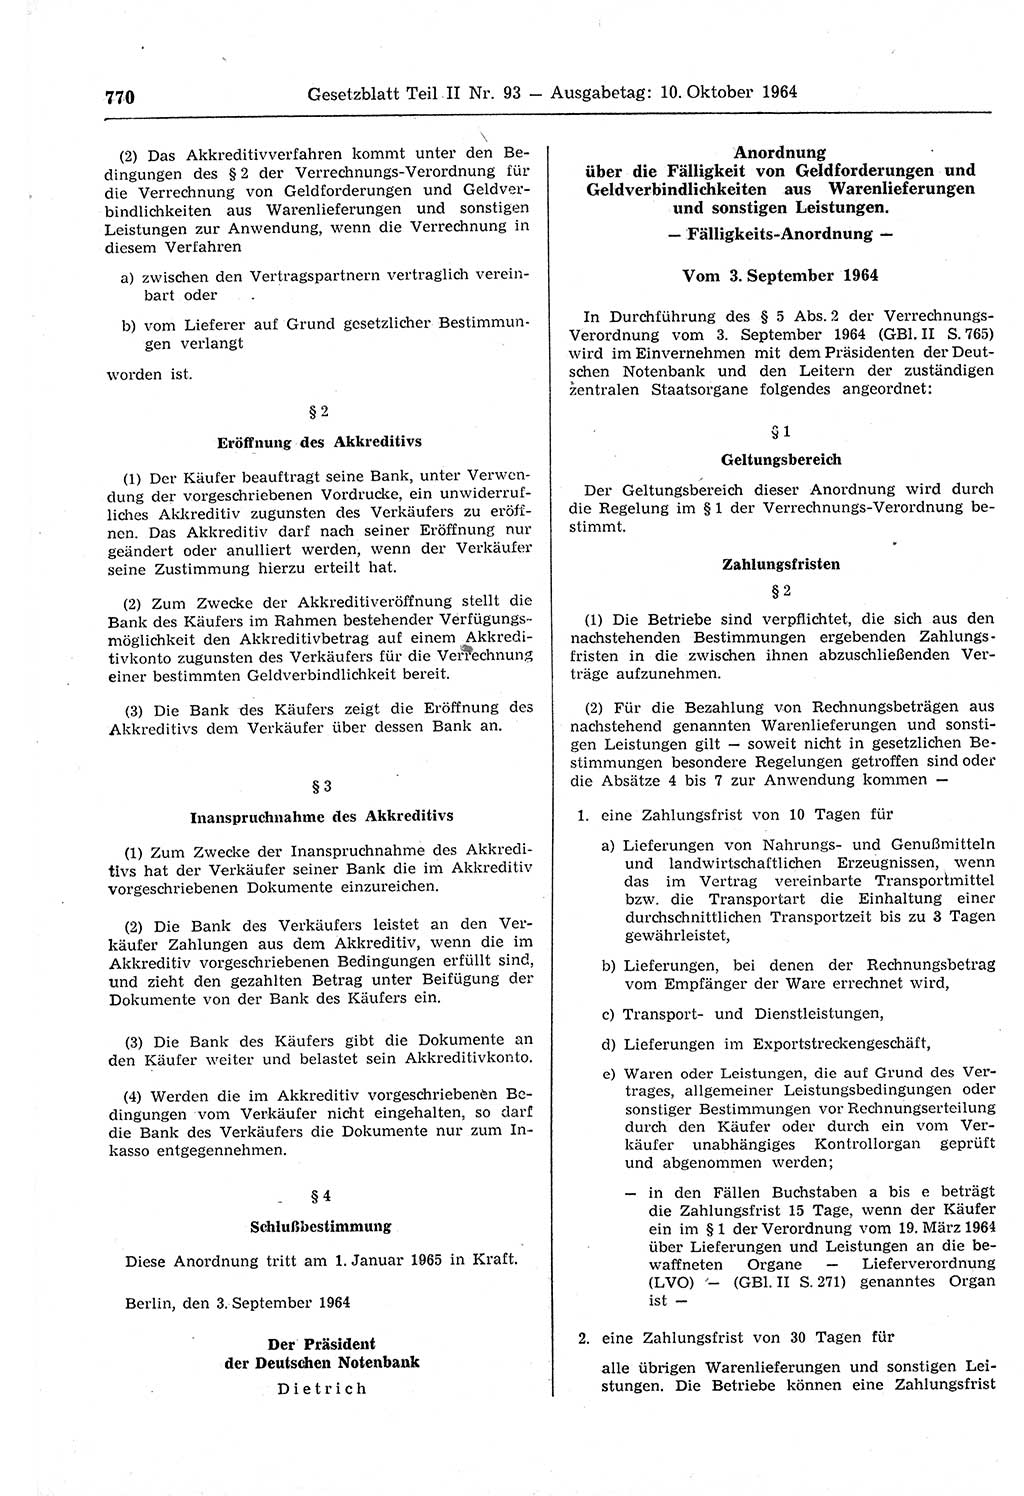 Gesetzblatt (GBl.) der Deutschen Demokratischen Republik (DDR) Teil ⅠⅠ 1964, Seite 770 (GBl. DDR ⅠⅠ 1964, S. 770)